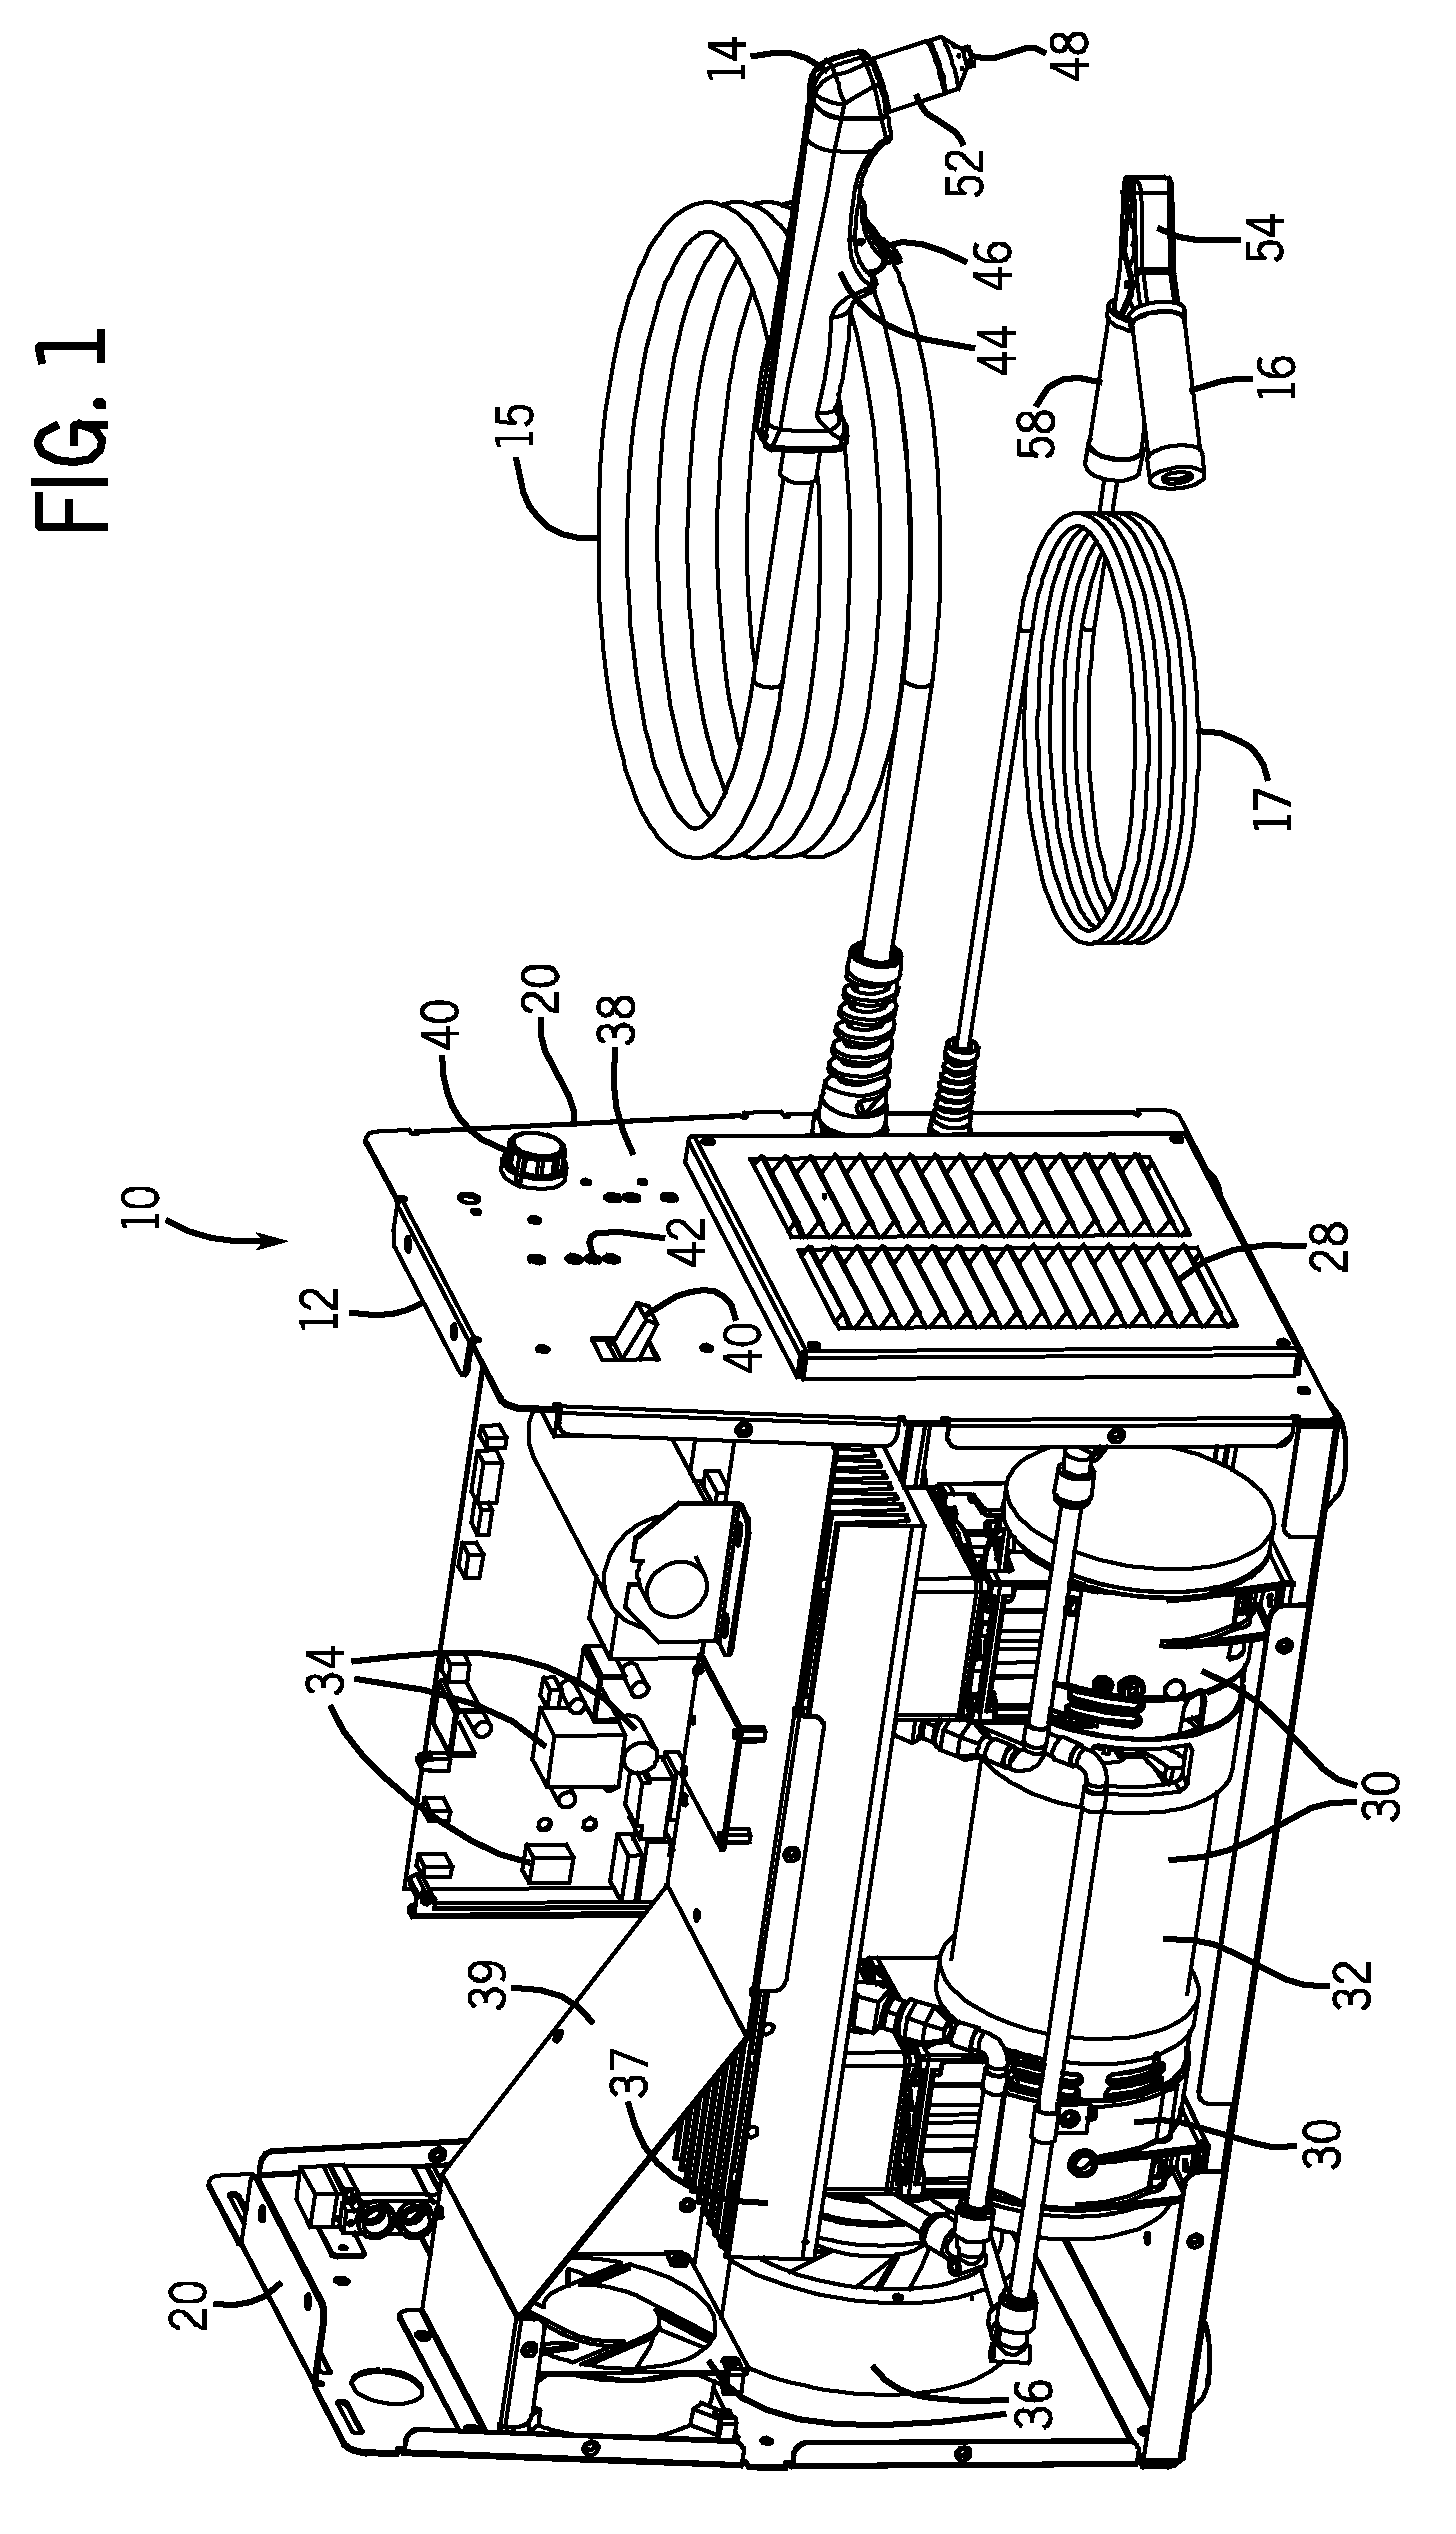 Multi-stage compressor in a plasma cutter